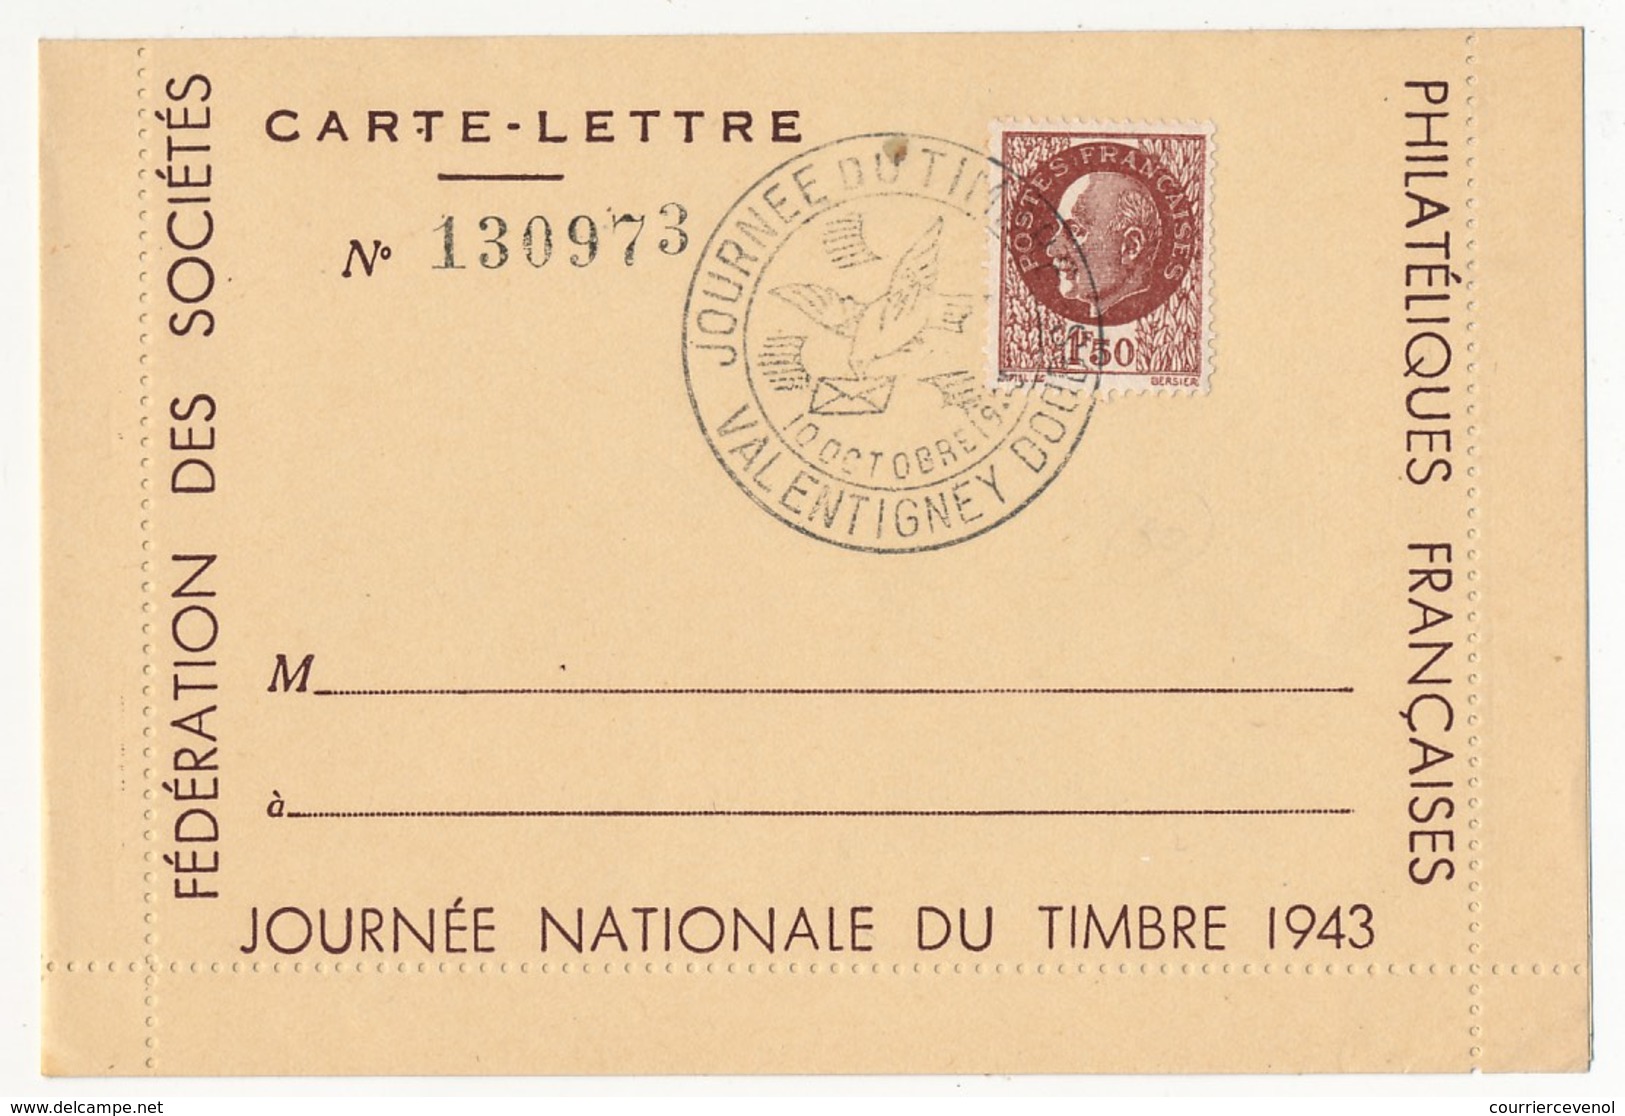 FRANCE - Carte-lettre Illustrée - Journée Du Timbre 1943 VALENTIGNEY - Affr 1,50 Bersier, Cachet Temporaire - Día Del Sello